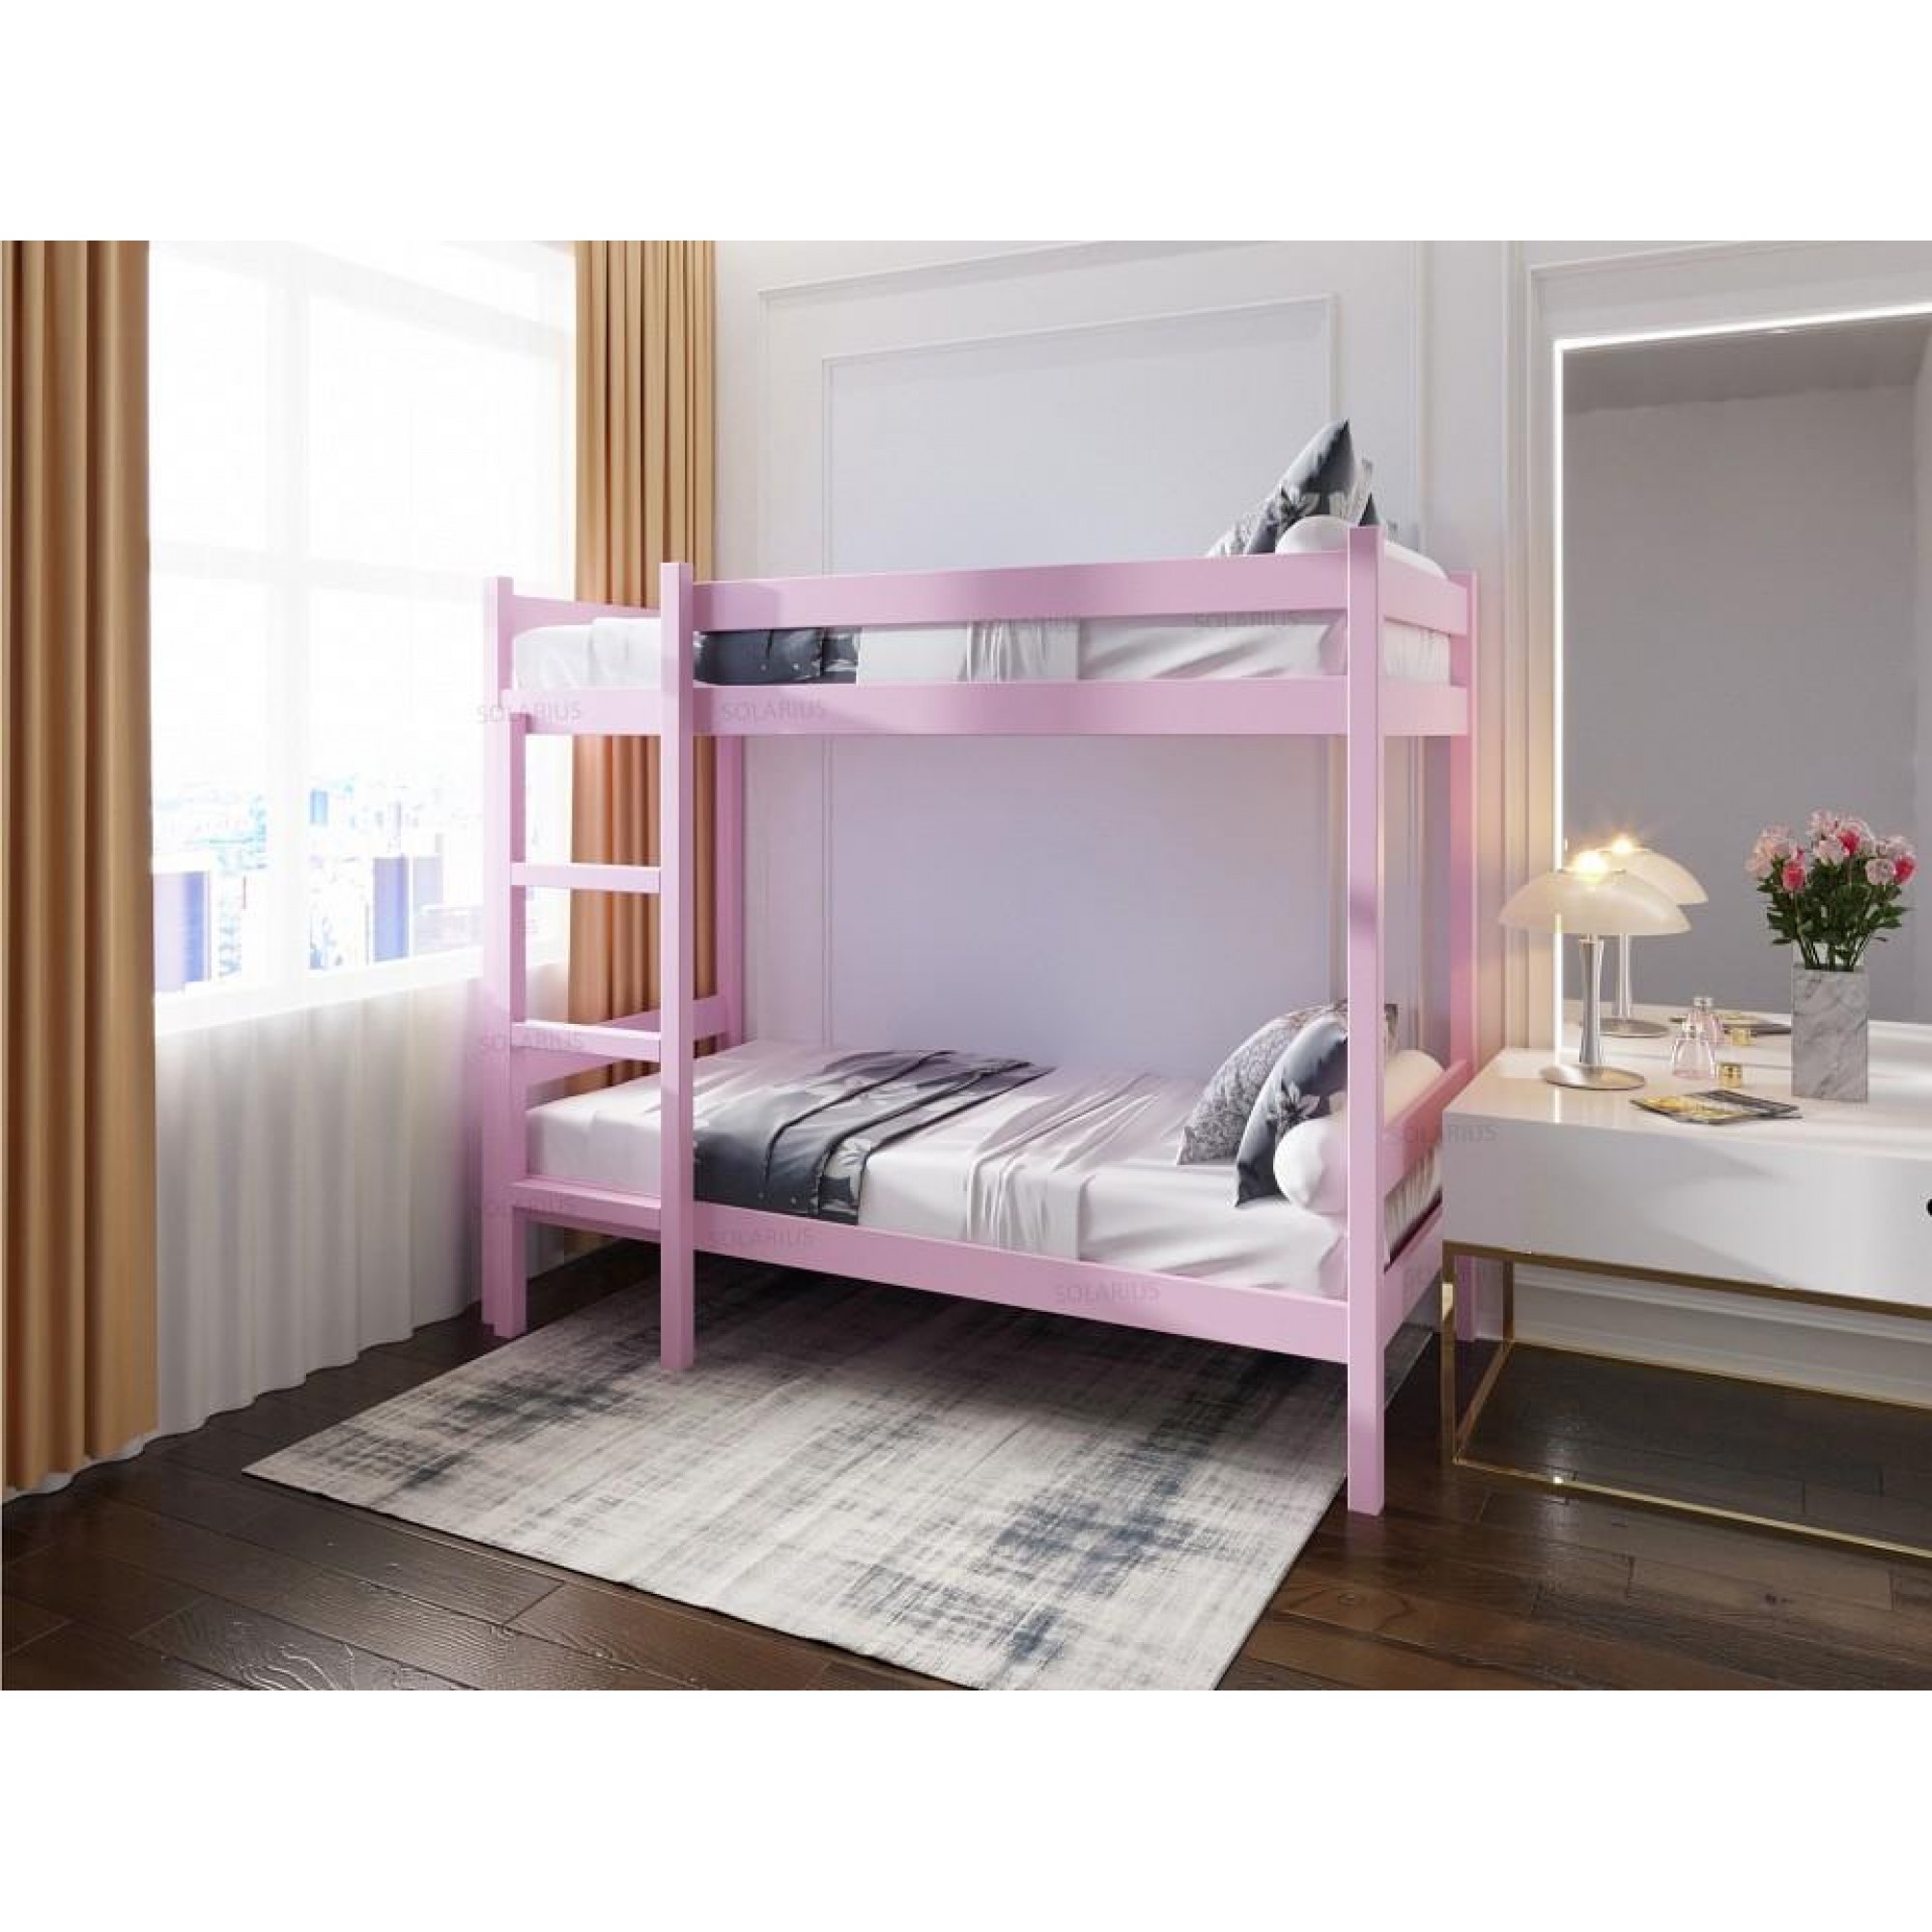 Кровать двухъярусная Solarius 1900x800 розовый    SLR_dvuh80190roz